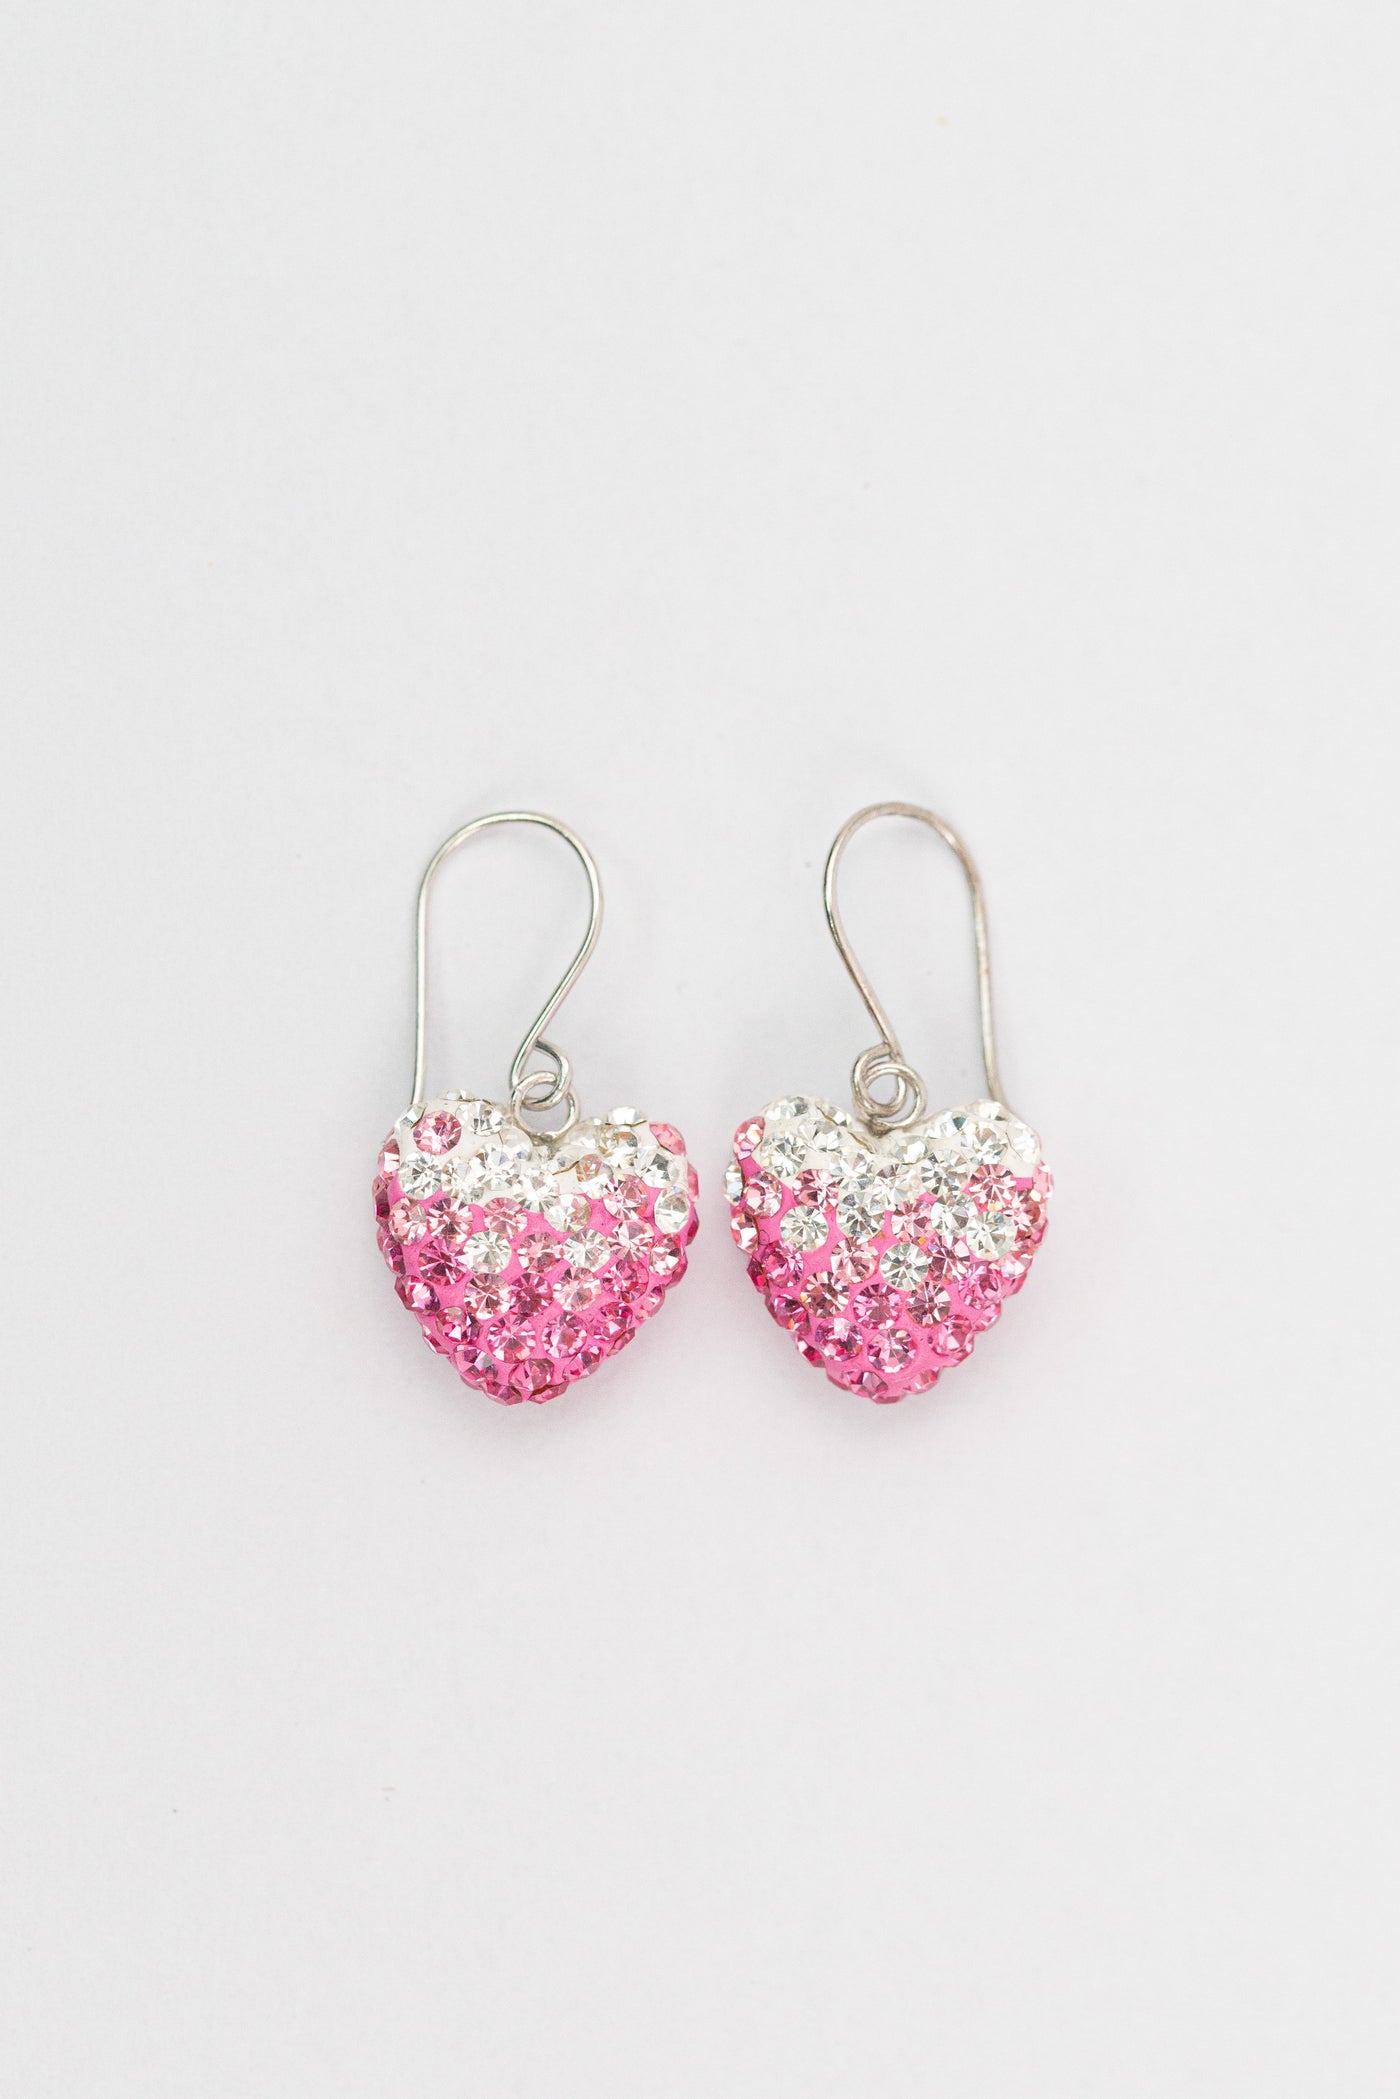 Buy Vibrant gorgeous multicoloured heart-shaped earrings Online. – Odette